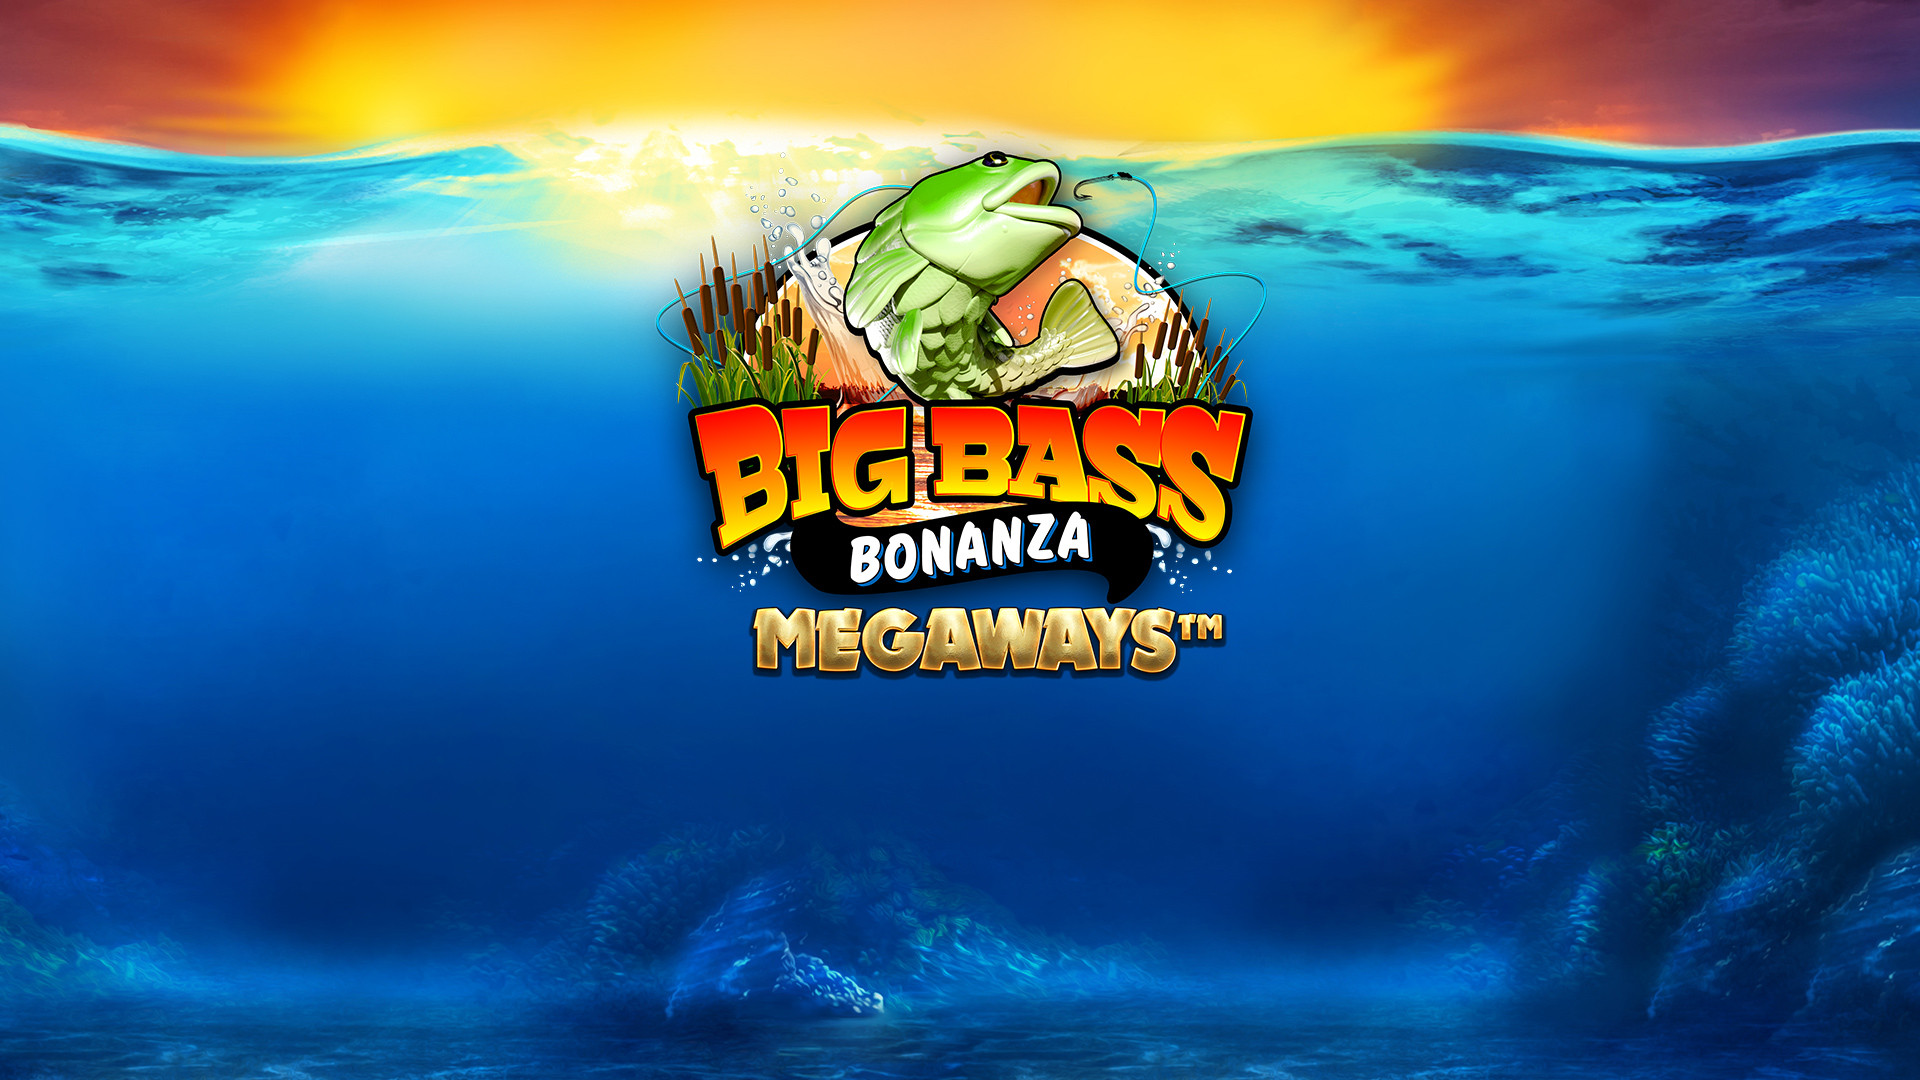 Big Bass Bonanza MEGAWAYS